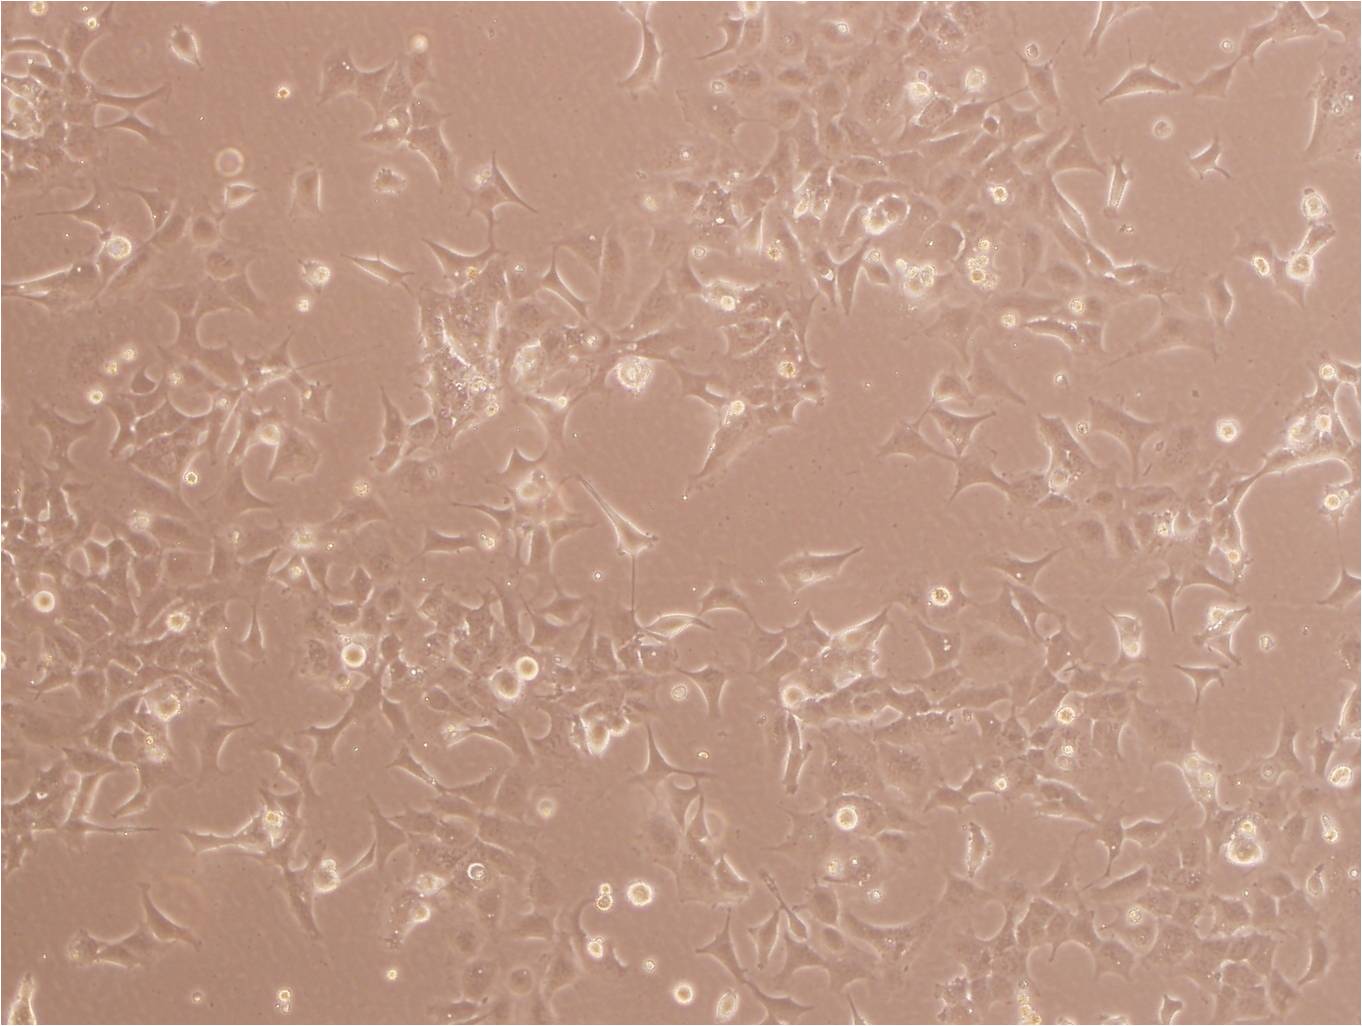 SK-LU-1 Cells|人低分化肺腺癌需消化细胞系